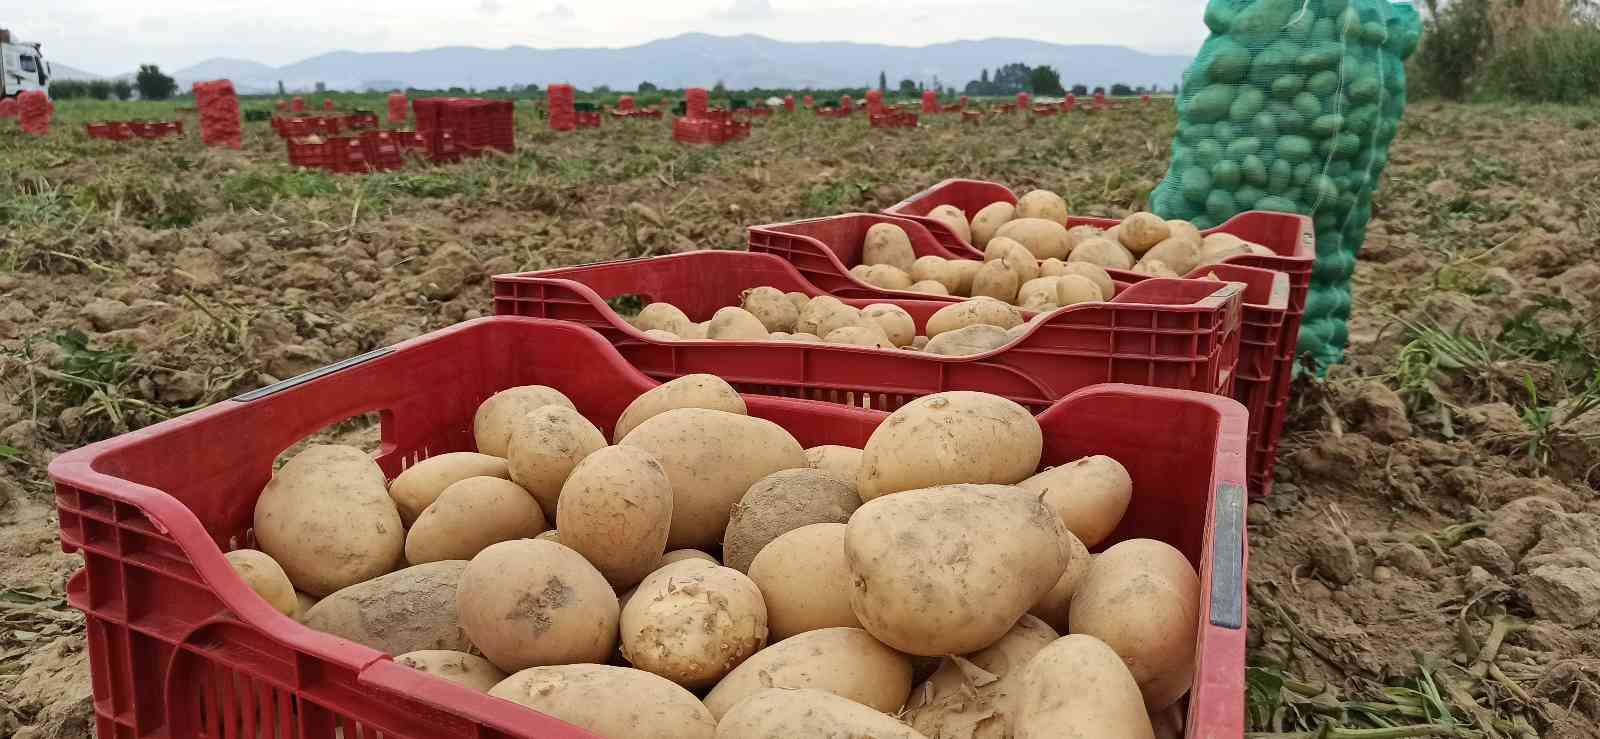 Ödemiş’te kış patatesi hasadı başladı #izmir